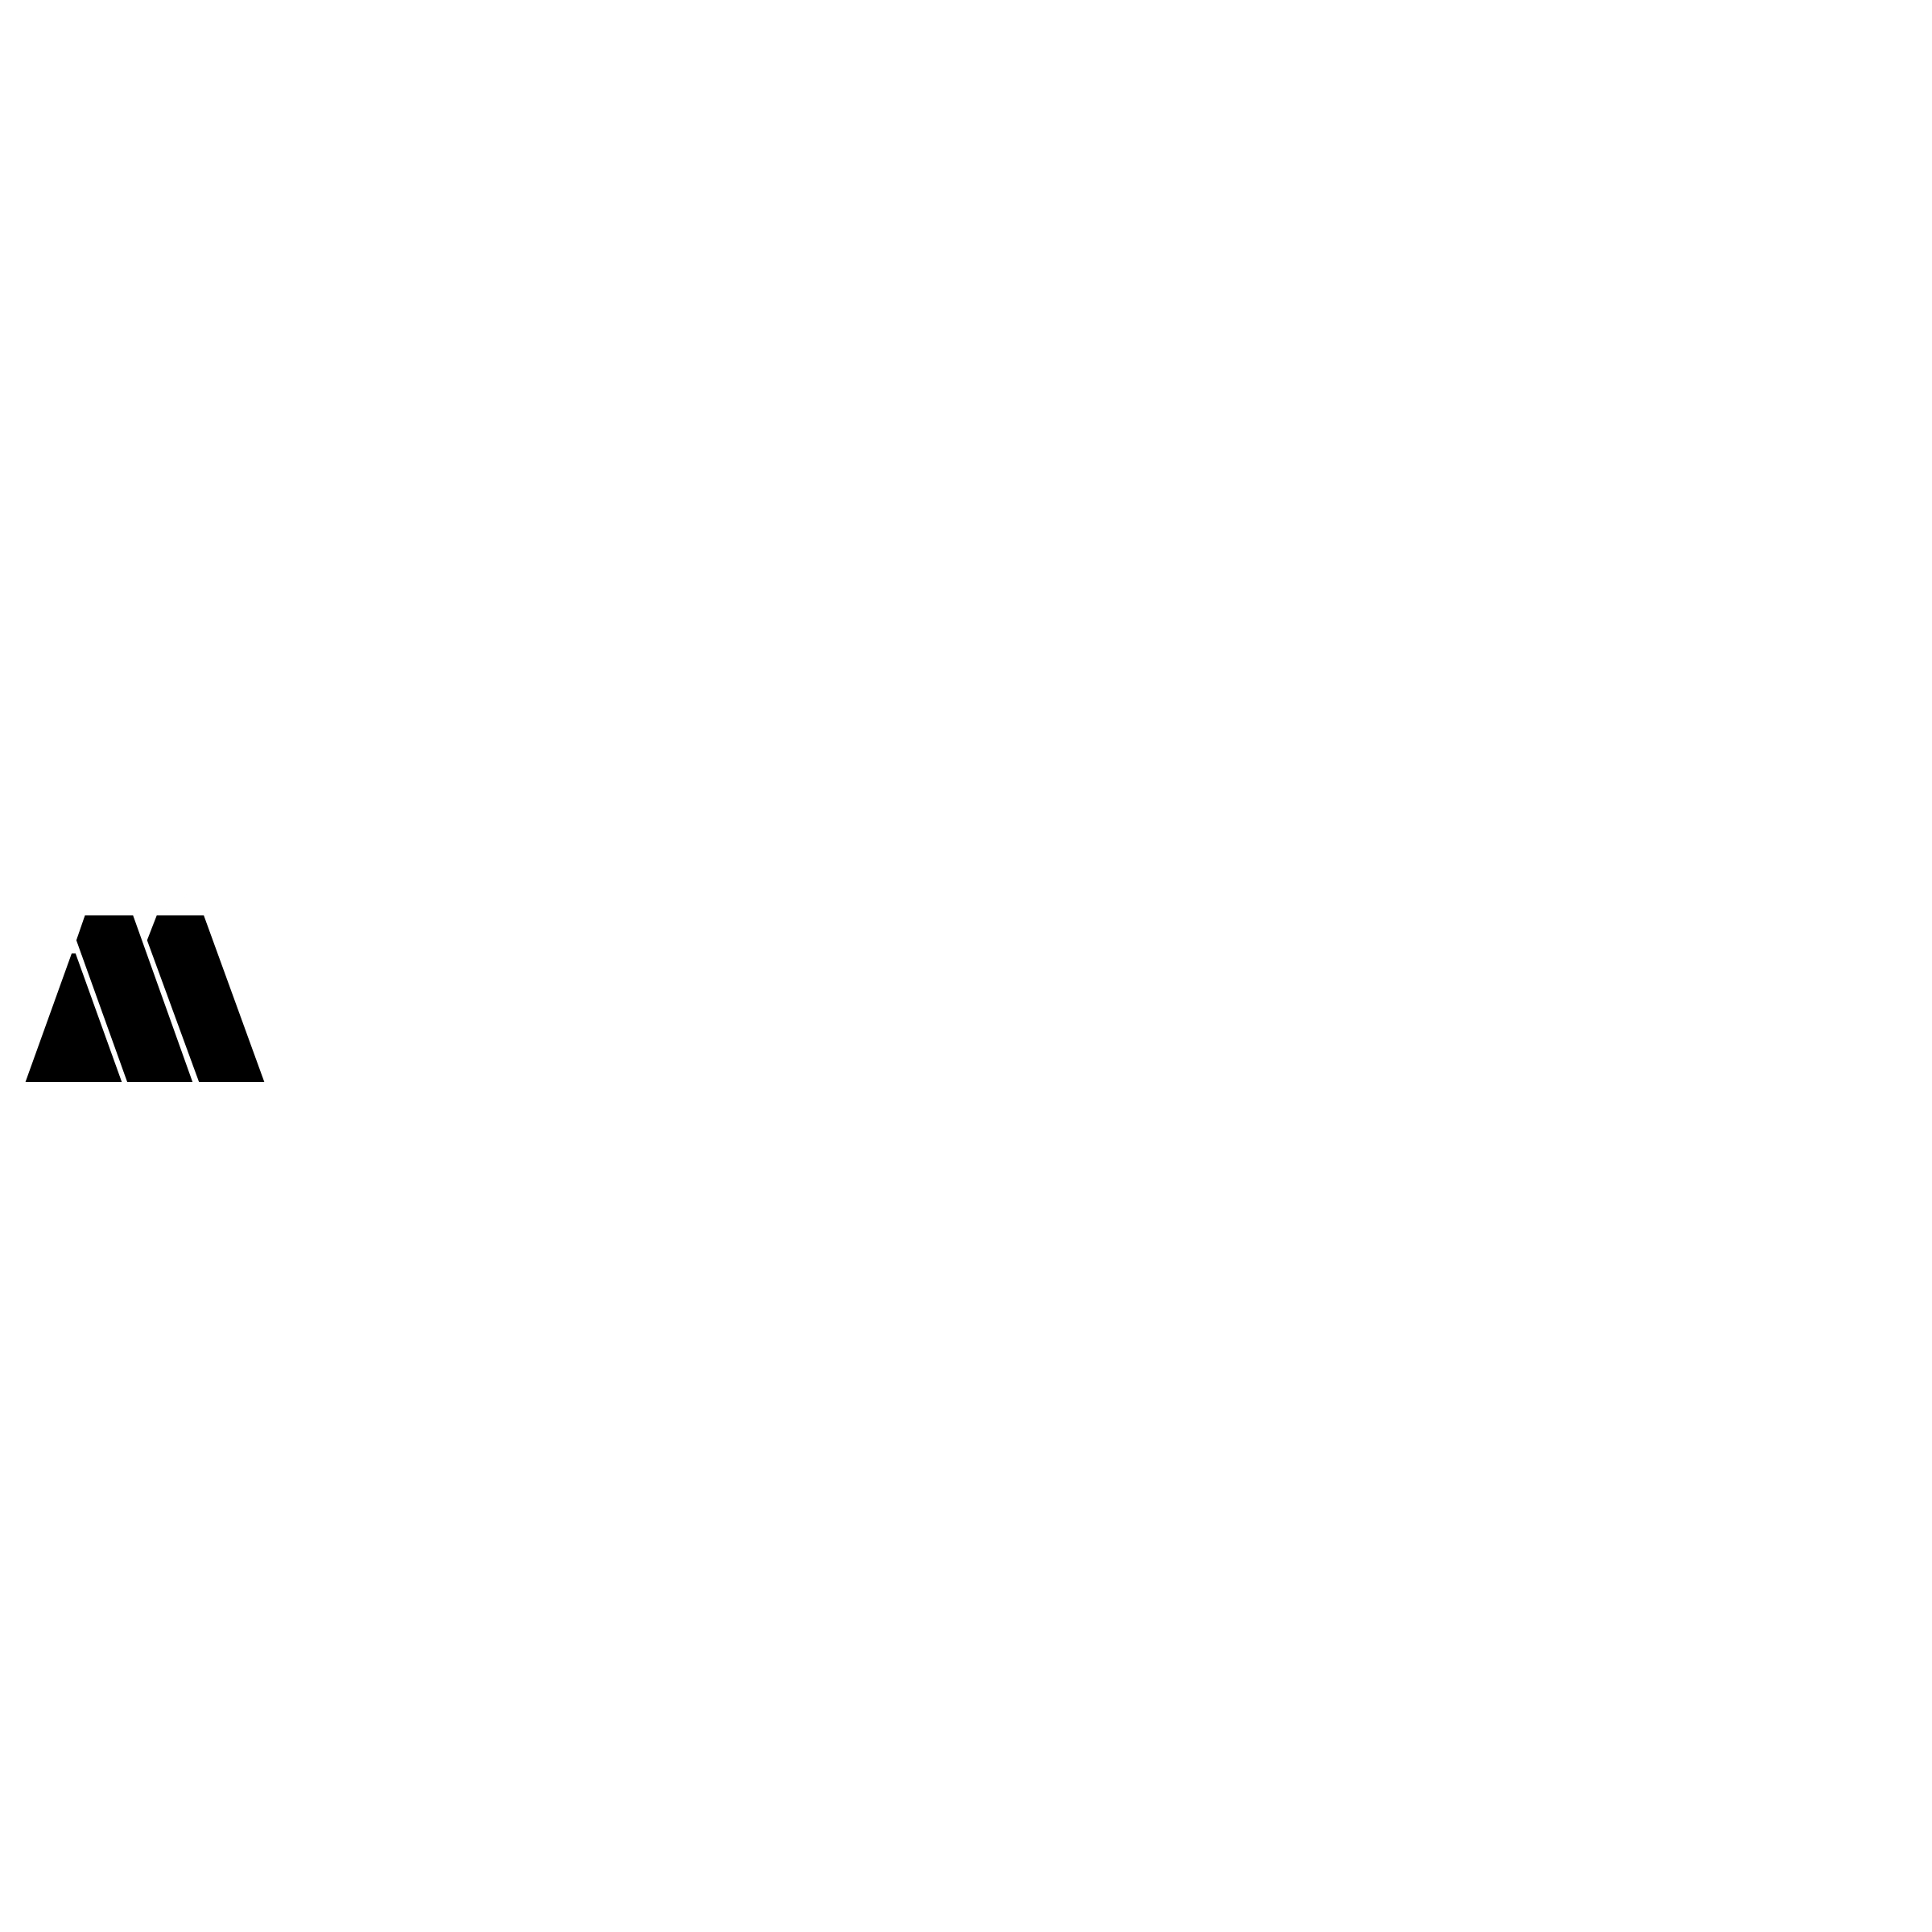 Steyr Logo - Magna Steyr Logo PNG Transparent & SVG Vector